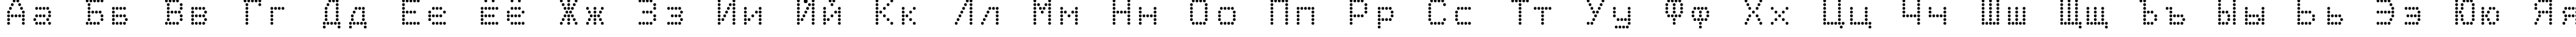 Пример написания русского алфавита шрифтом Epson2